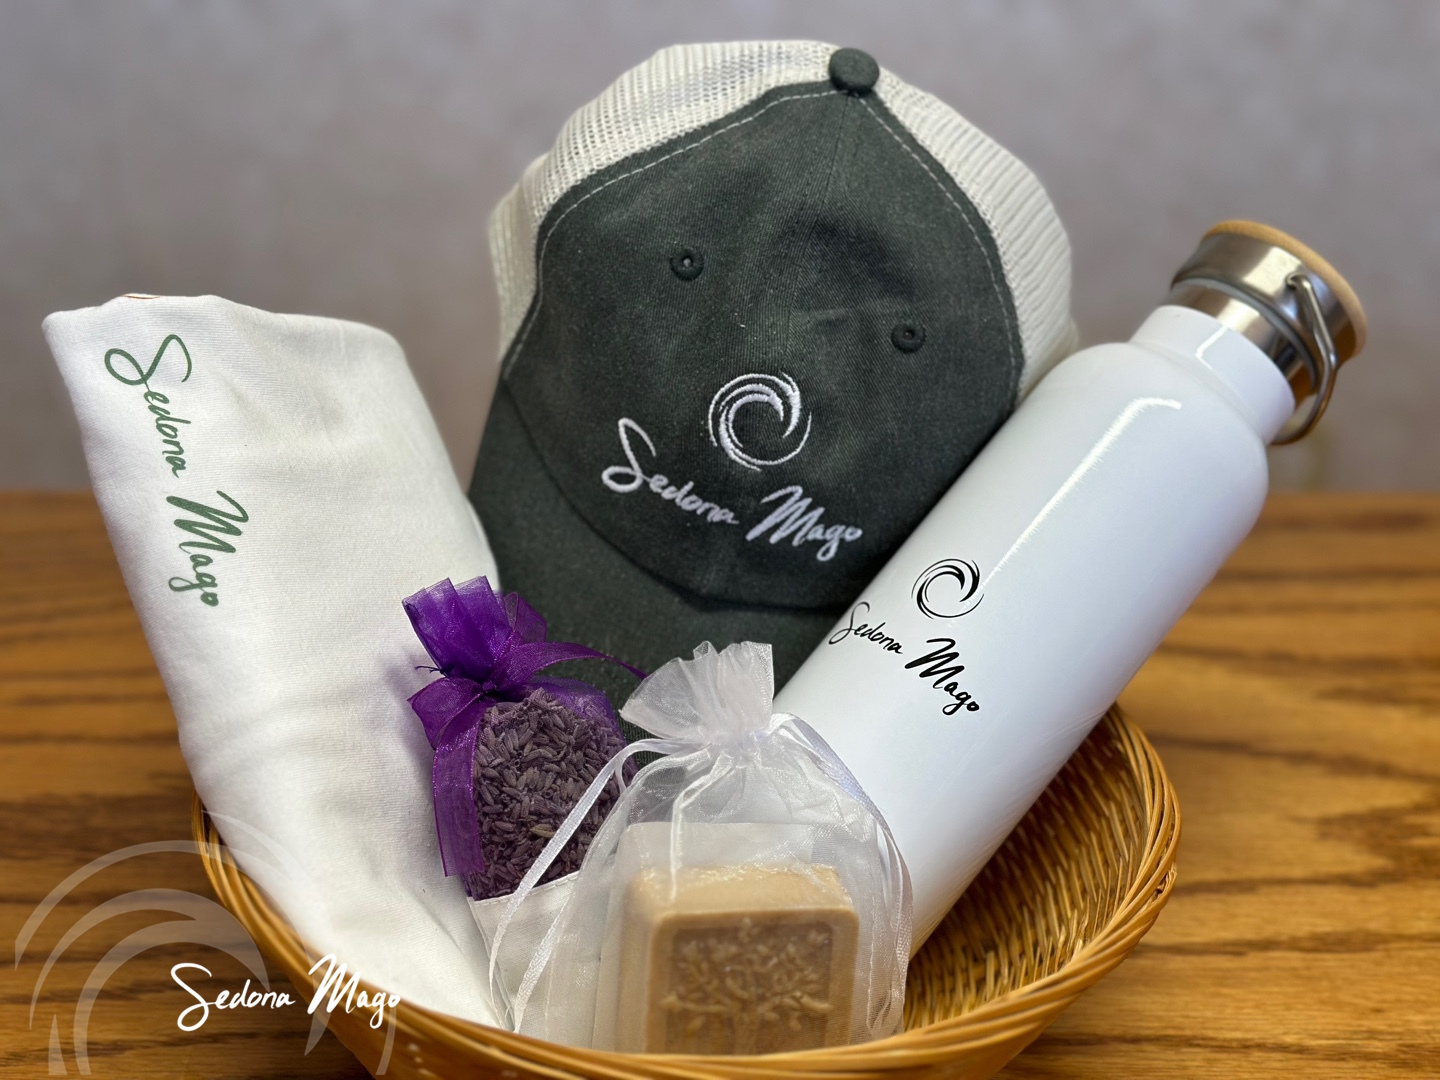 Mago-Gift-Basket_-Hat-T-shirt-Water-bottle-Lavender-Soap-2